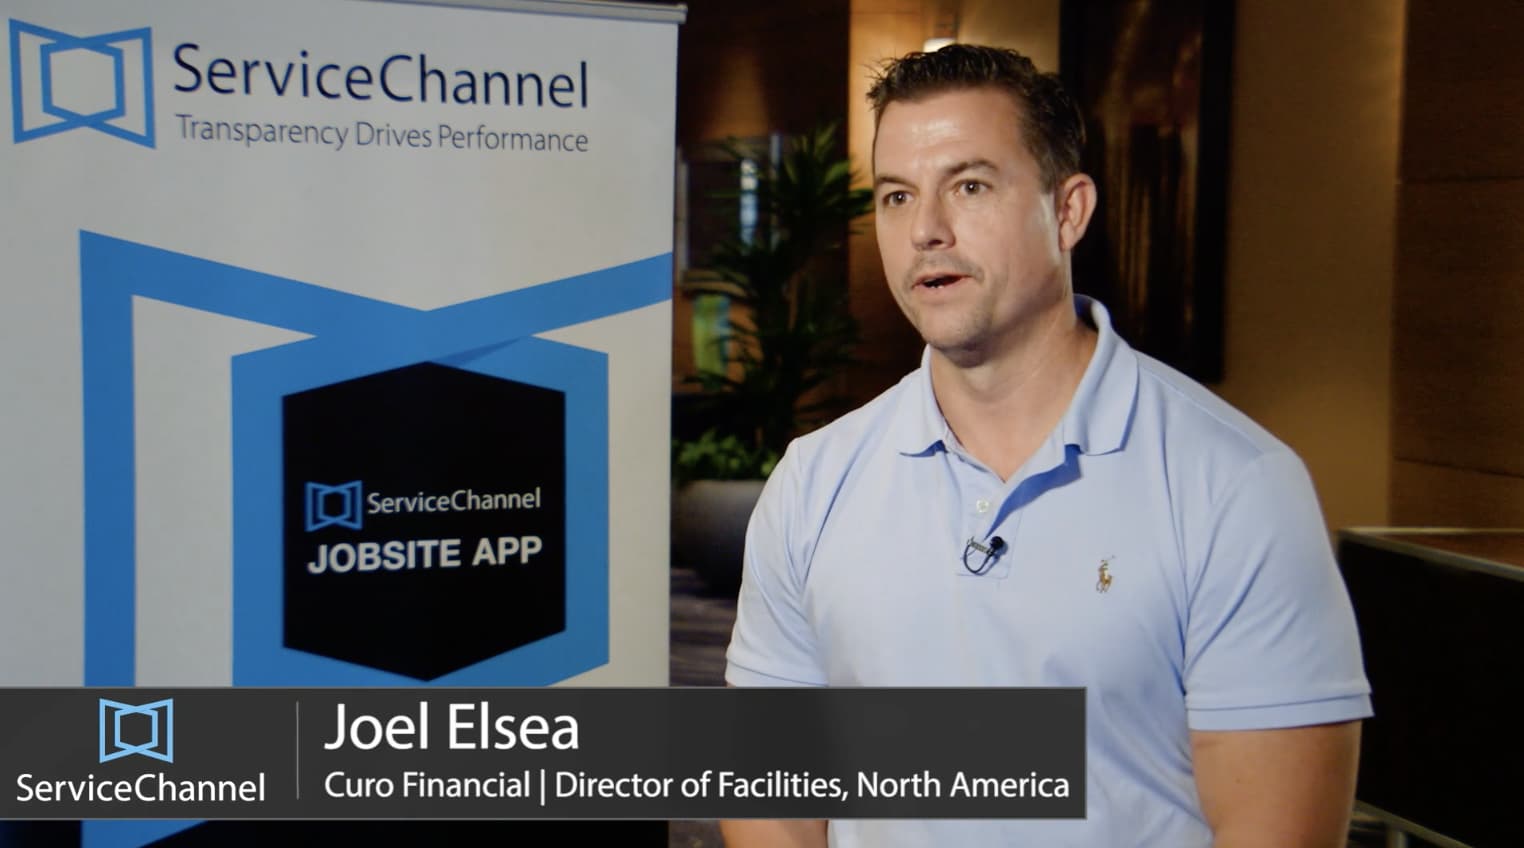 Joel Elsea - Curo Financial - Director of Facilities, North America